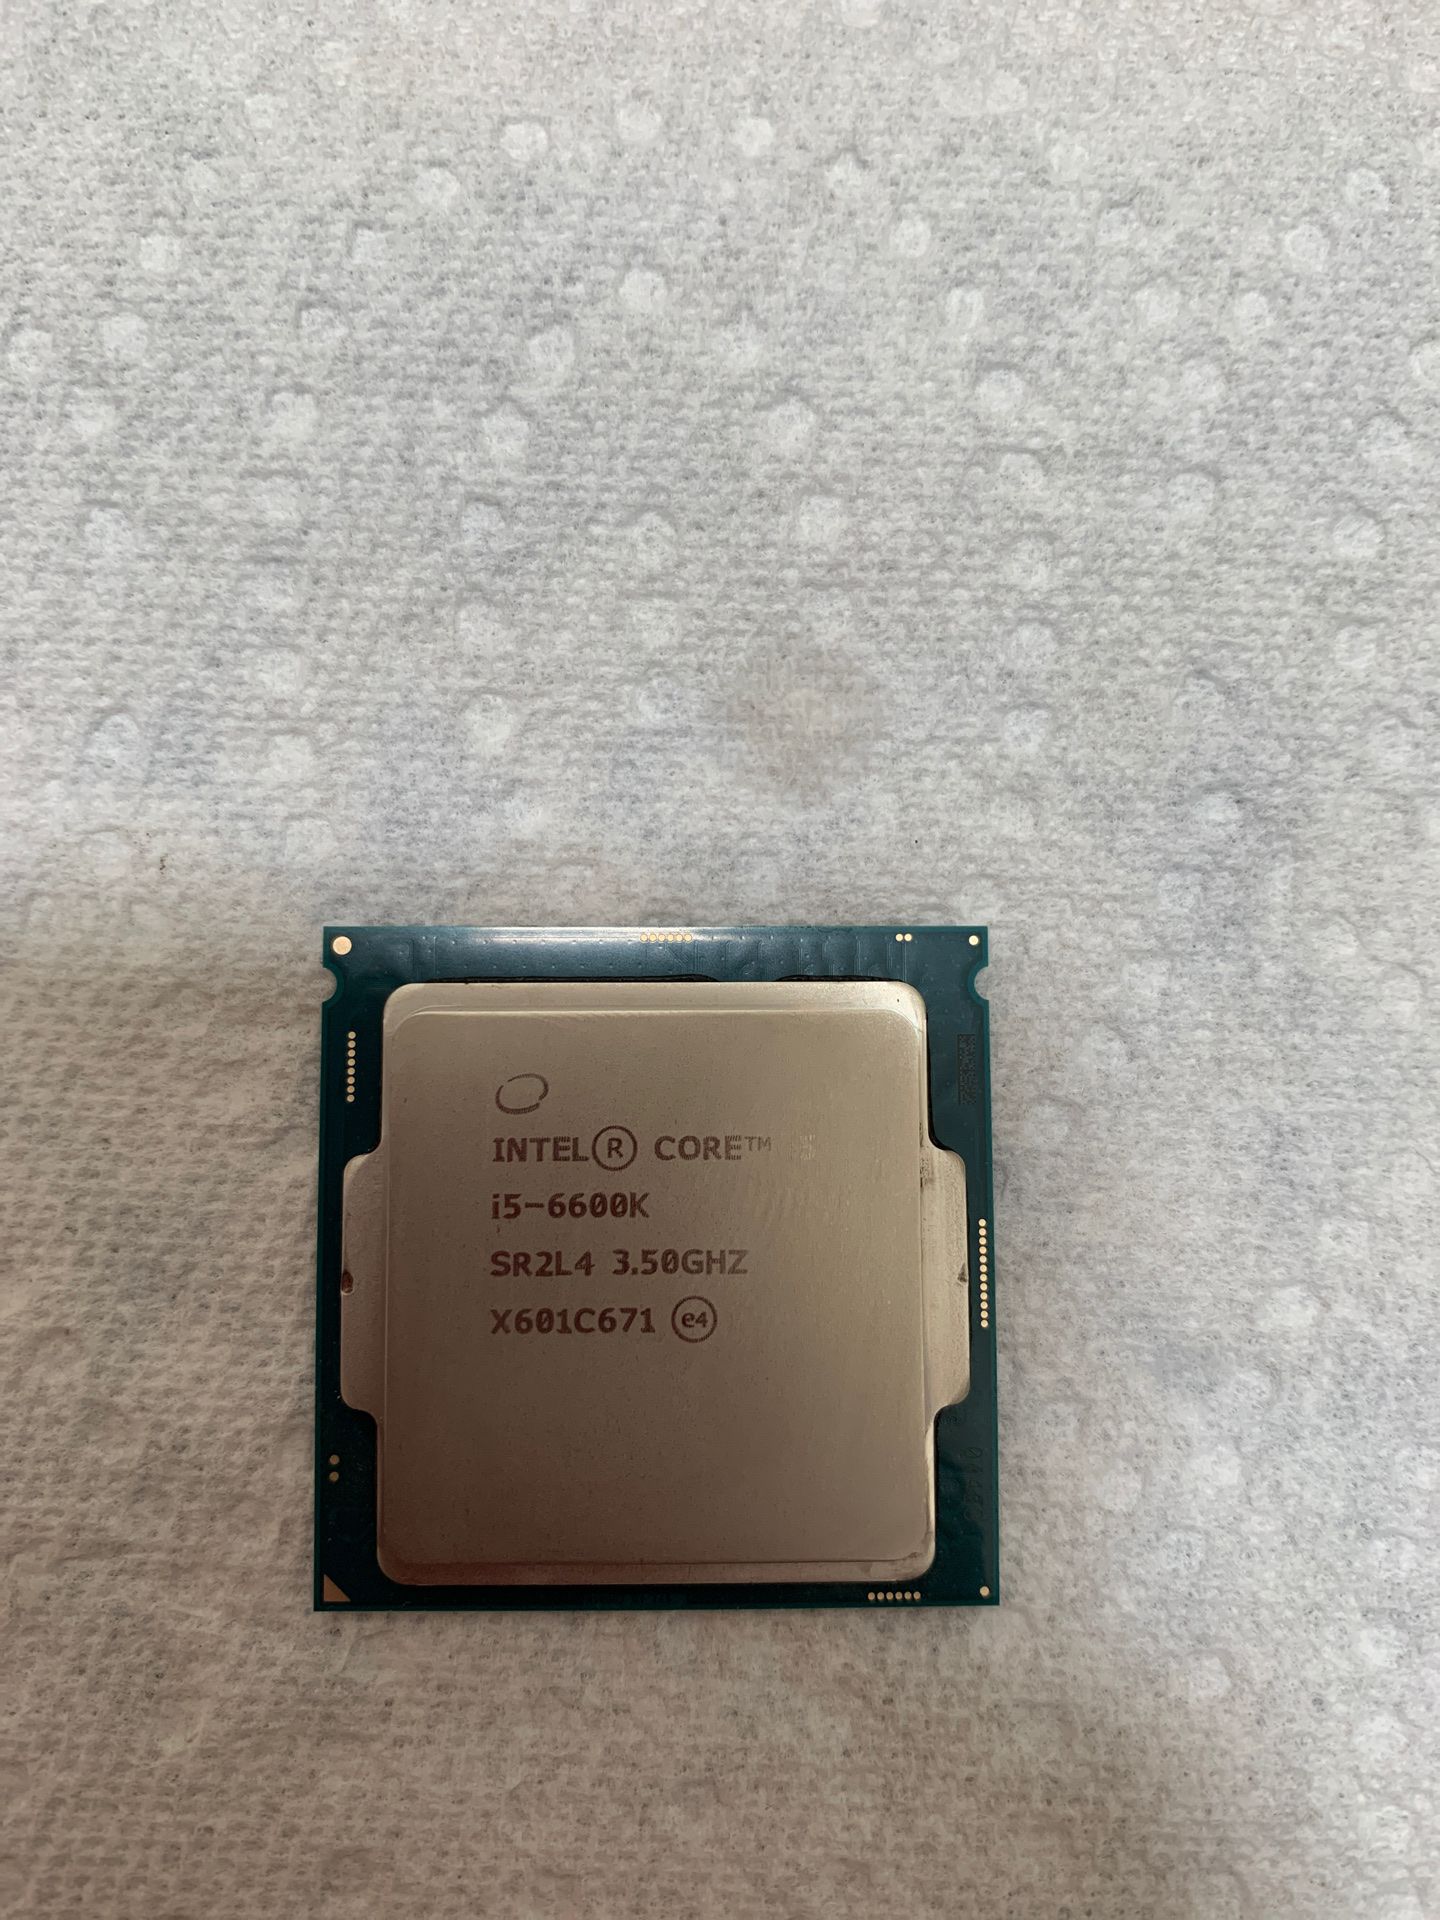 Intel i5-6600k 3.5 GHZ